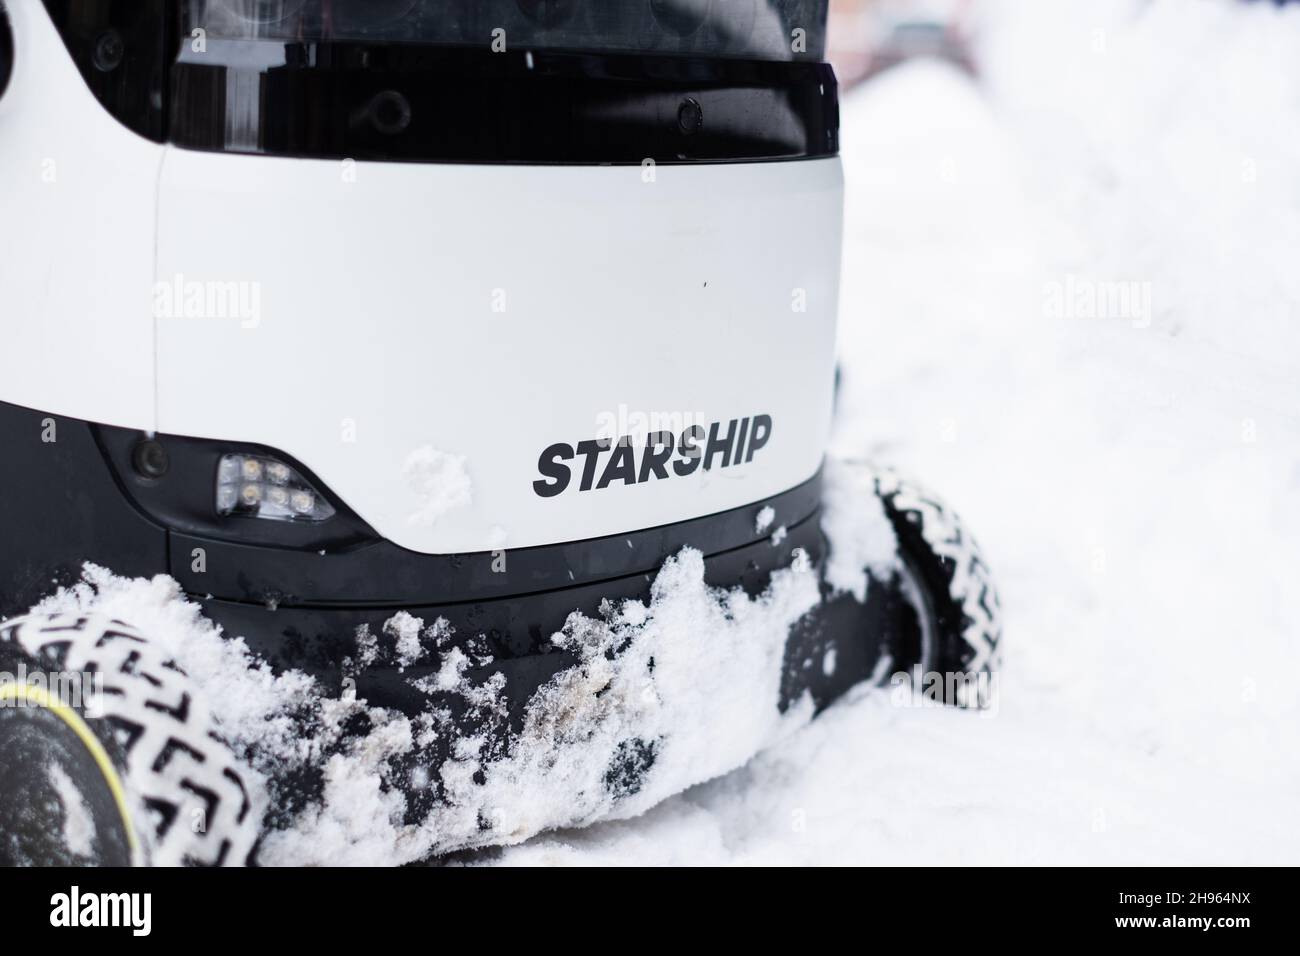 Tallinn, Estonia - 4 dicembre 2021: Veicolo con droni autonomi Starship Technologies che guida nella neve durante l'inverno. Robot di consegna a guida automatica. Foto Stock